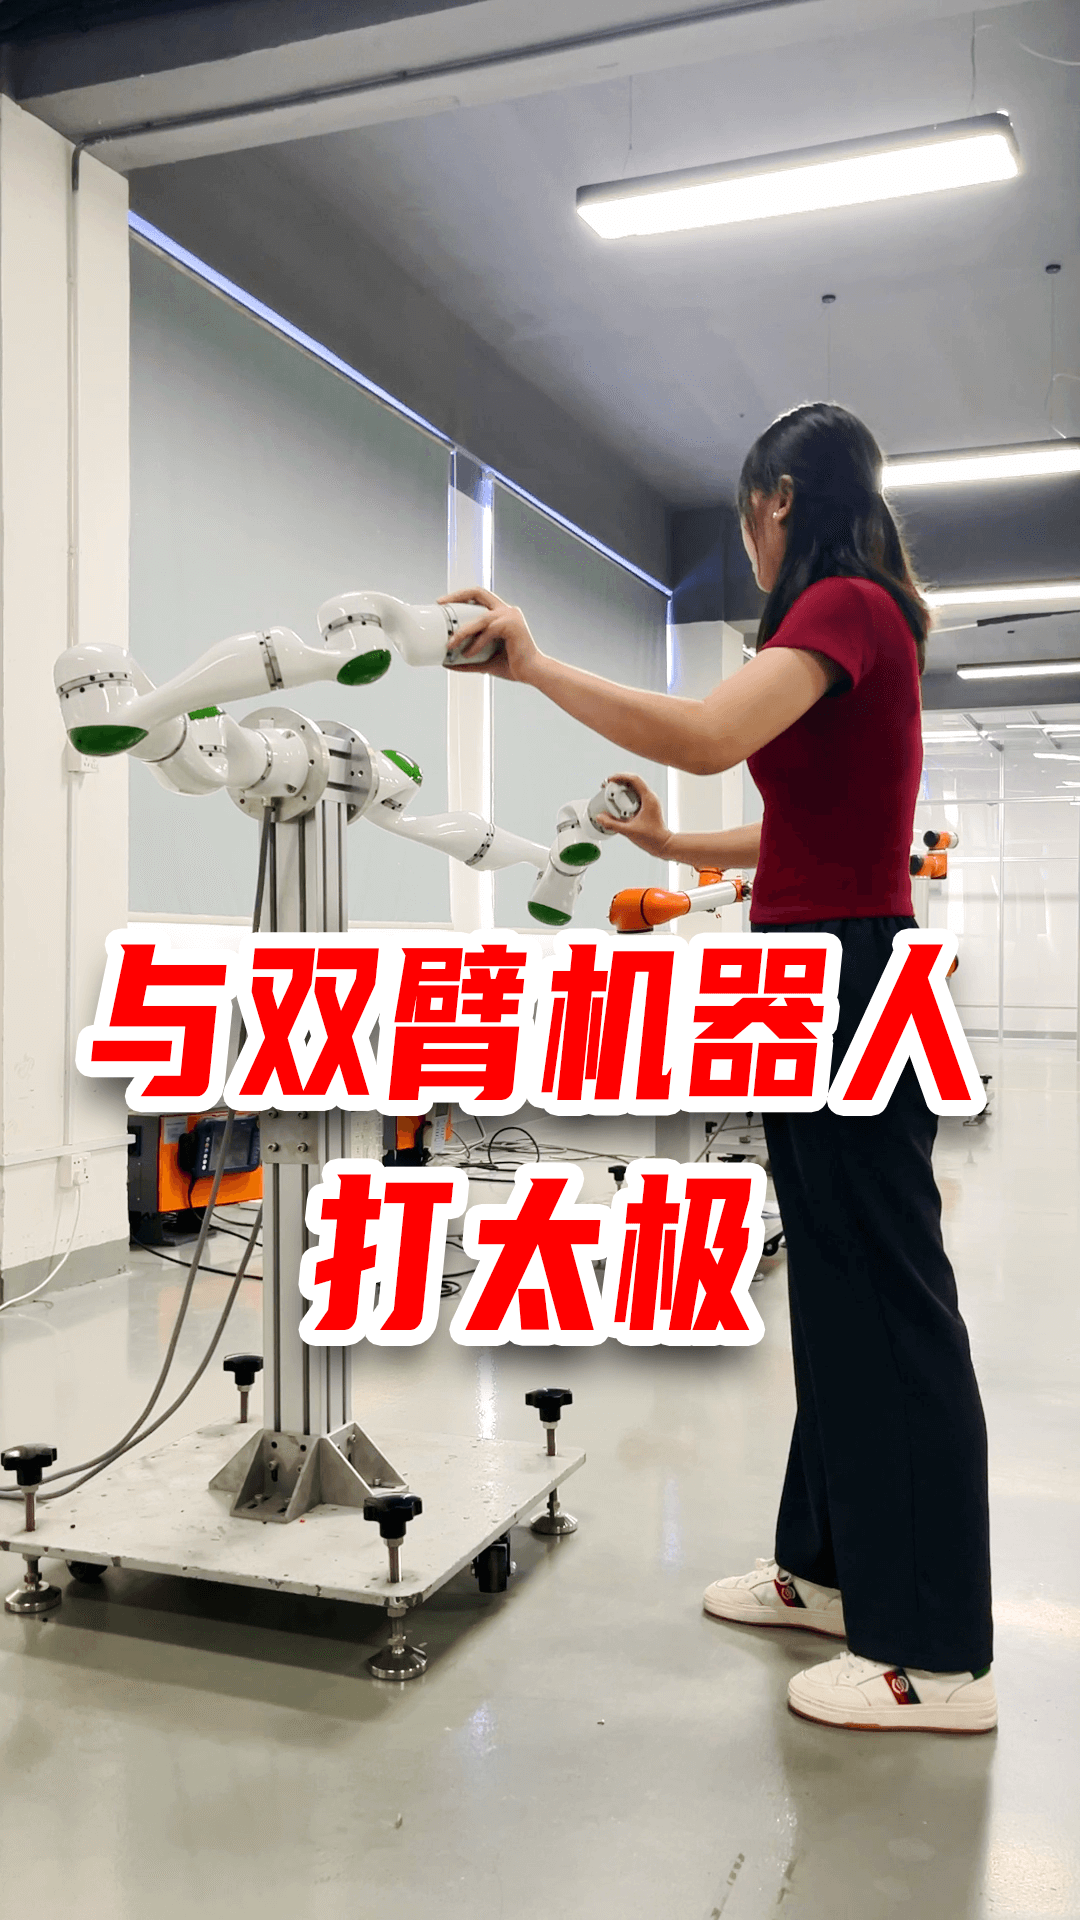 与双臂协作机器人打太极 - 泰科机器人

#柔性机器人 #双臂协作机器人 #协作机器人 #双臂机器人 #定制 